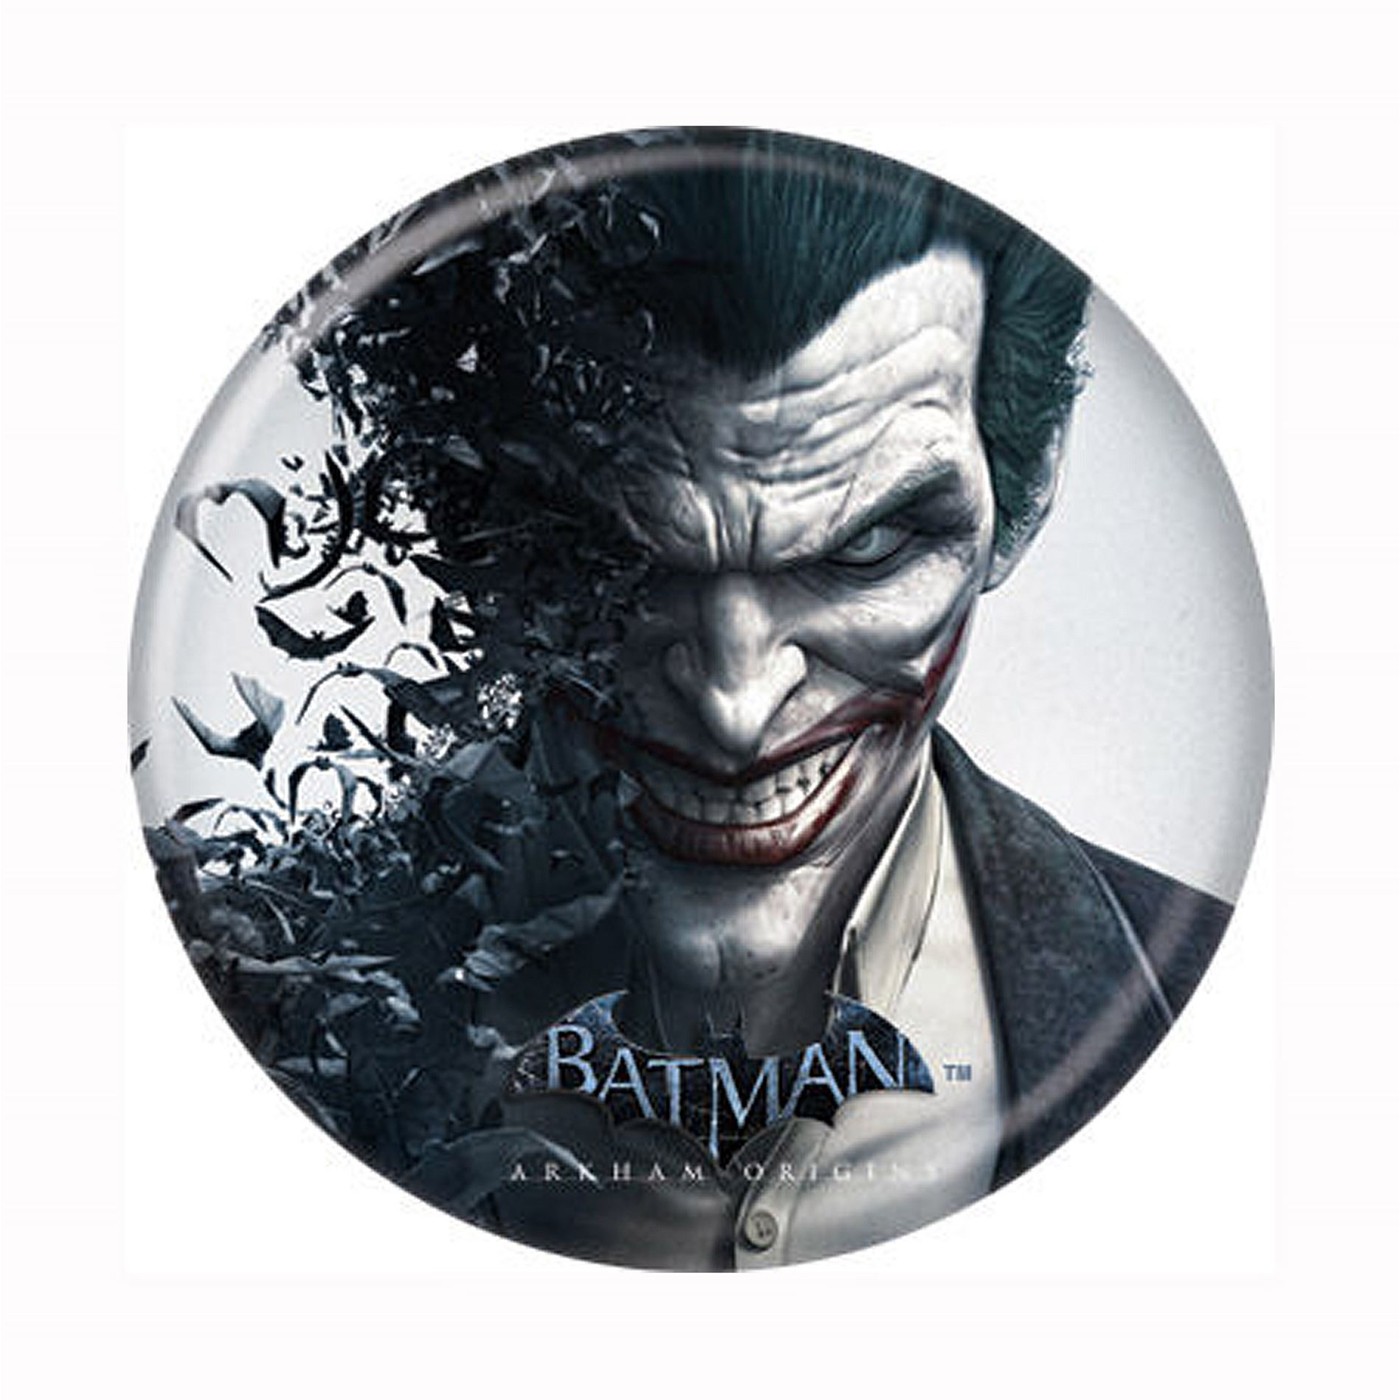 Batman Arkham Origins Joker Button